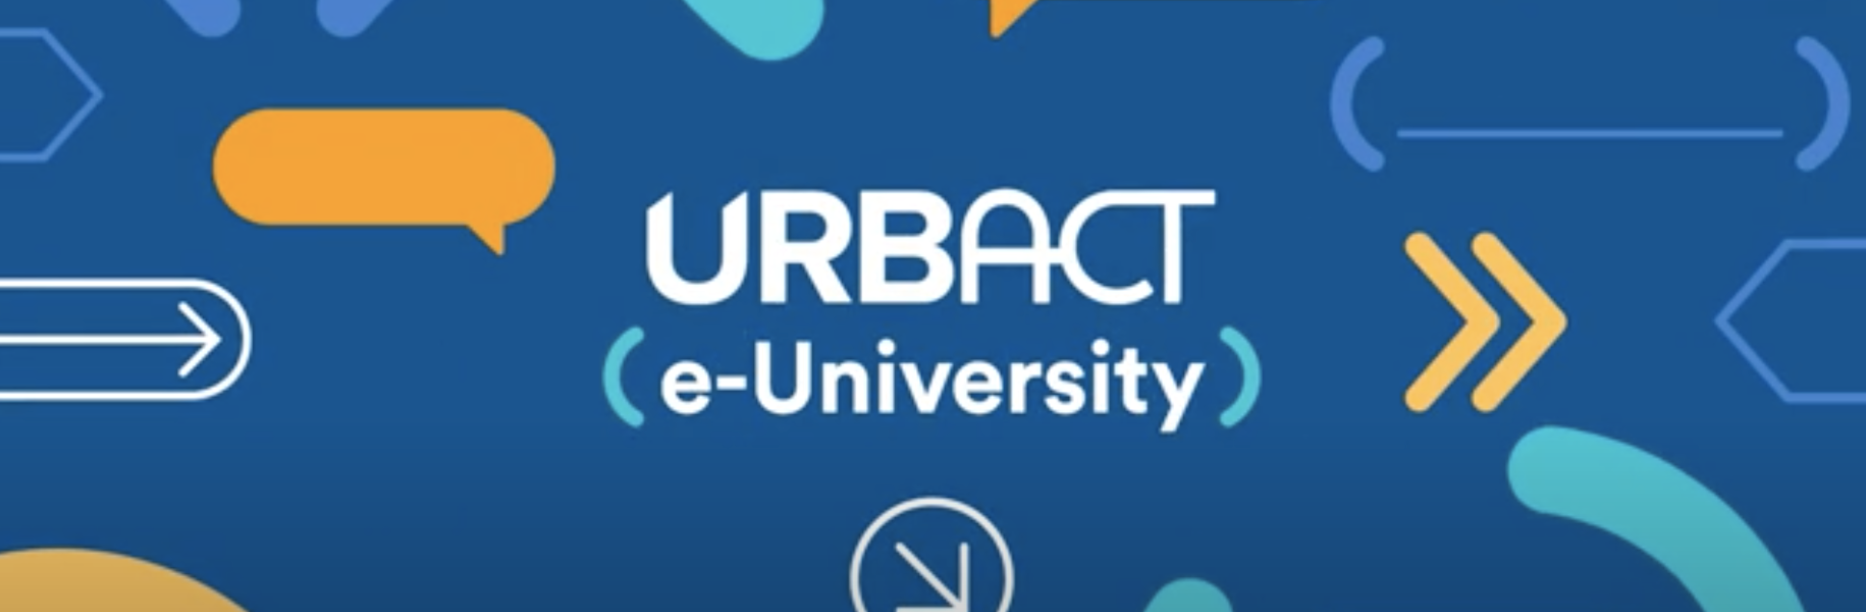 2020 URBACT e-University - banner